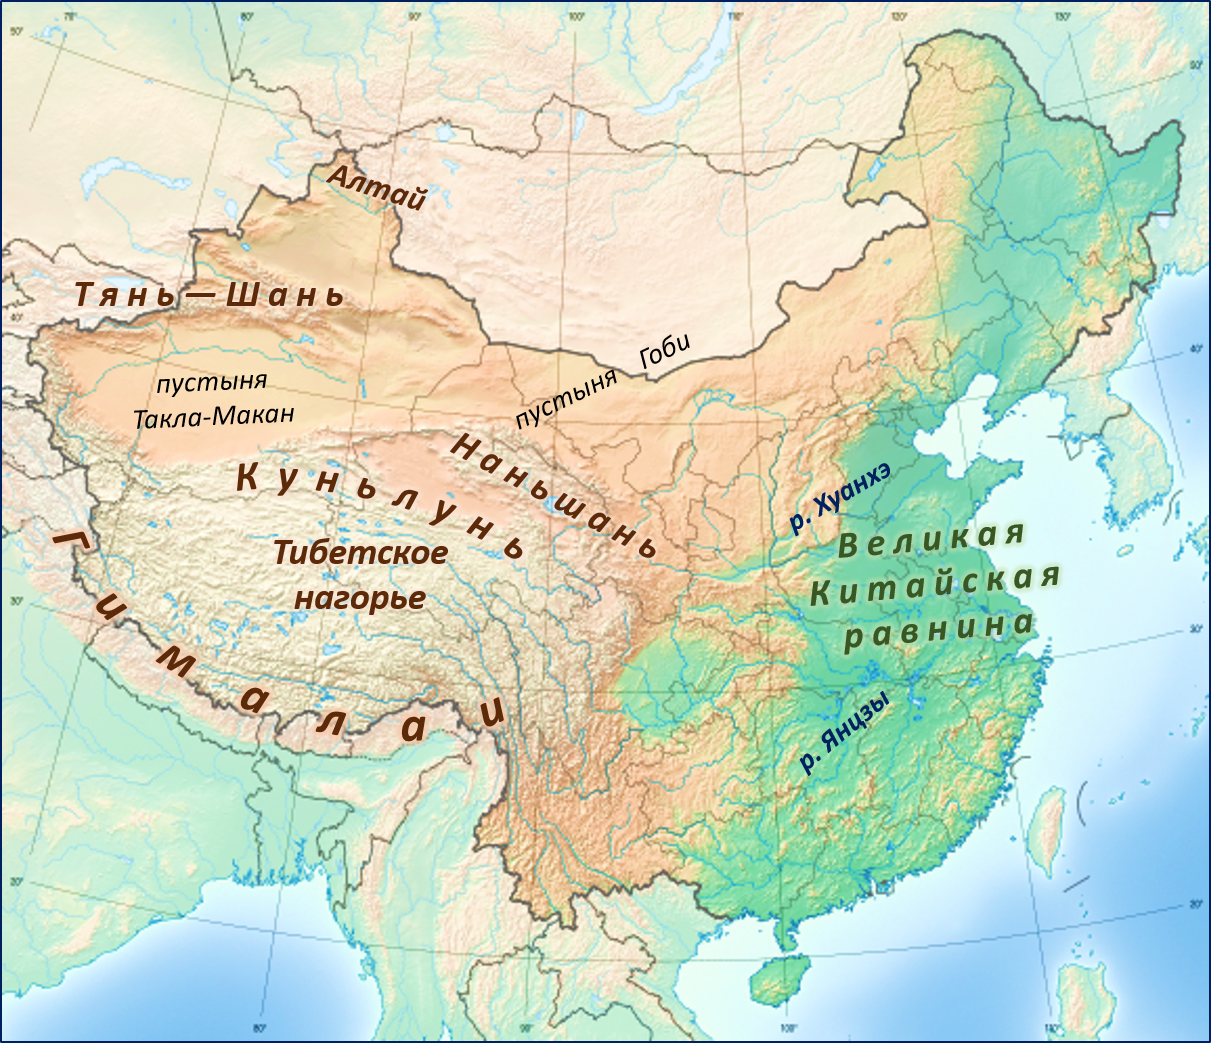 Китайская корейская форма рельефа. Рельеф Китая карта. Великая китайская равнина границы на карте. Карта Китая географическая рельеф. Великая китайская равнина на карте Азии.